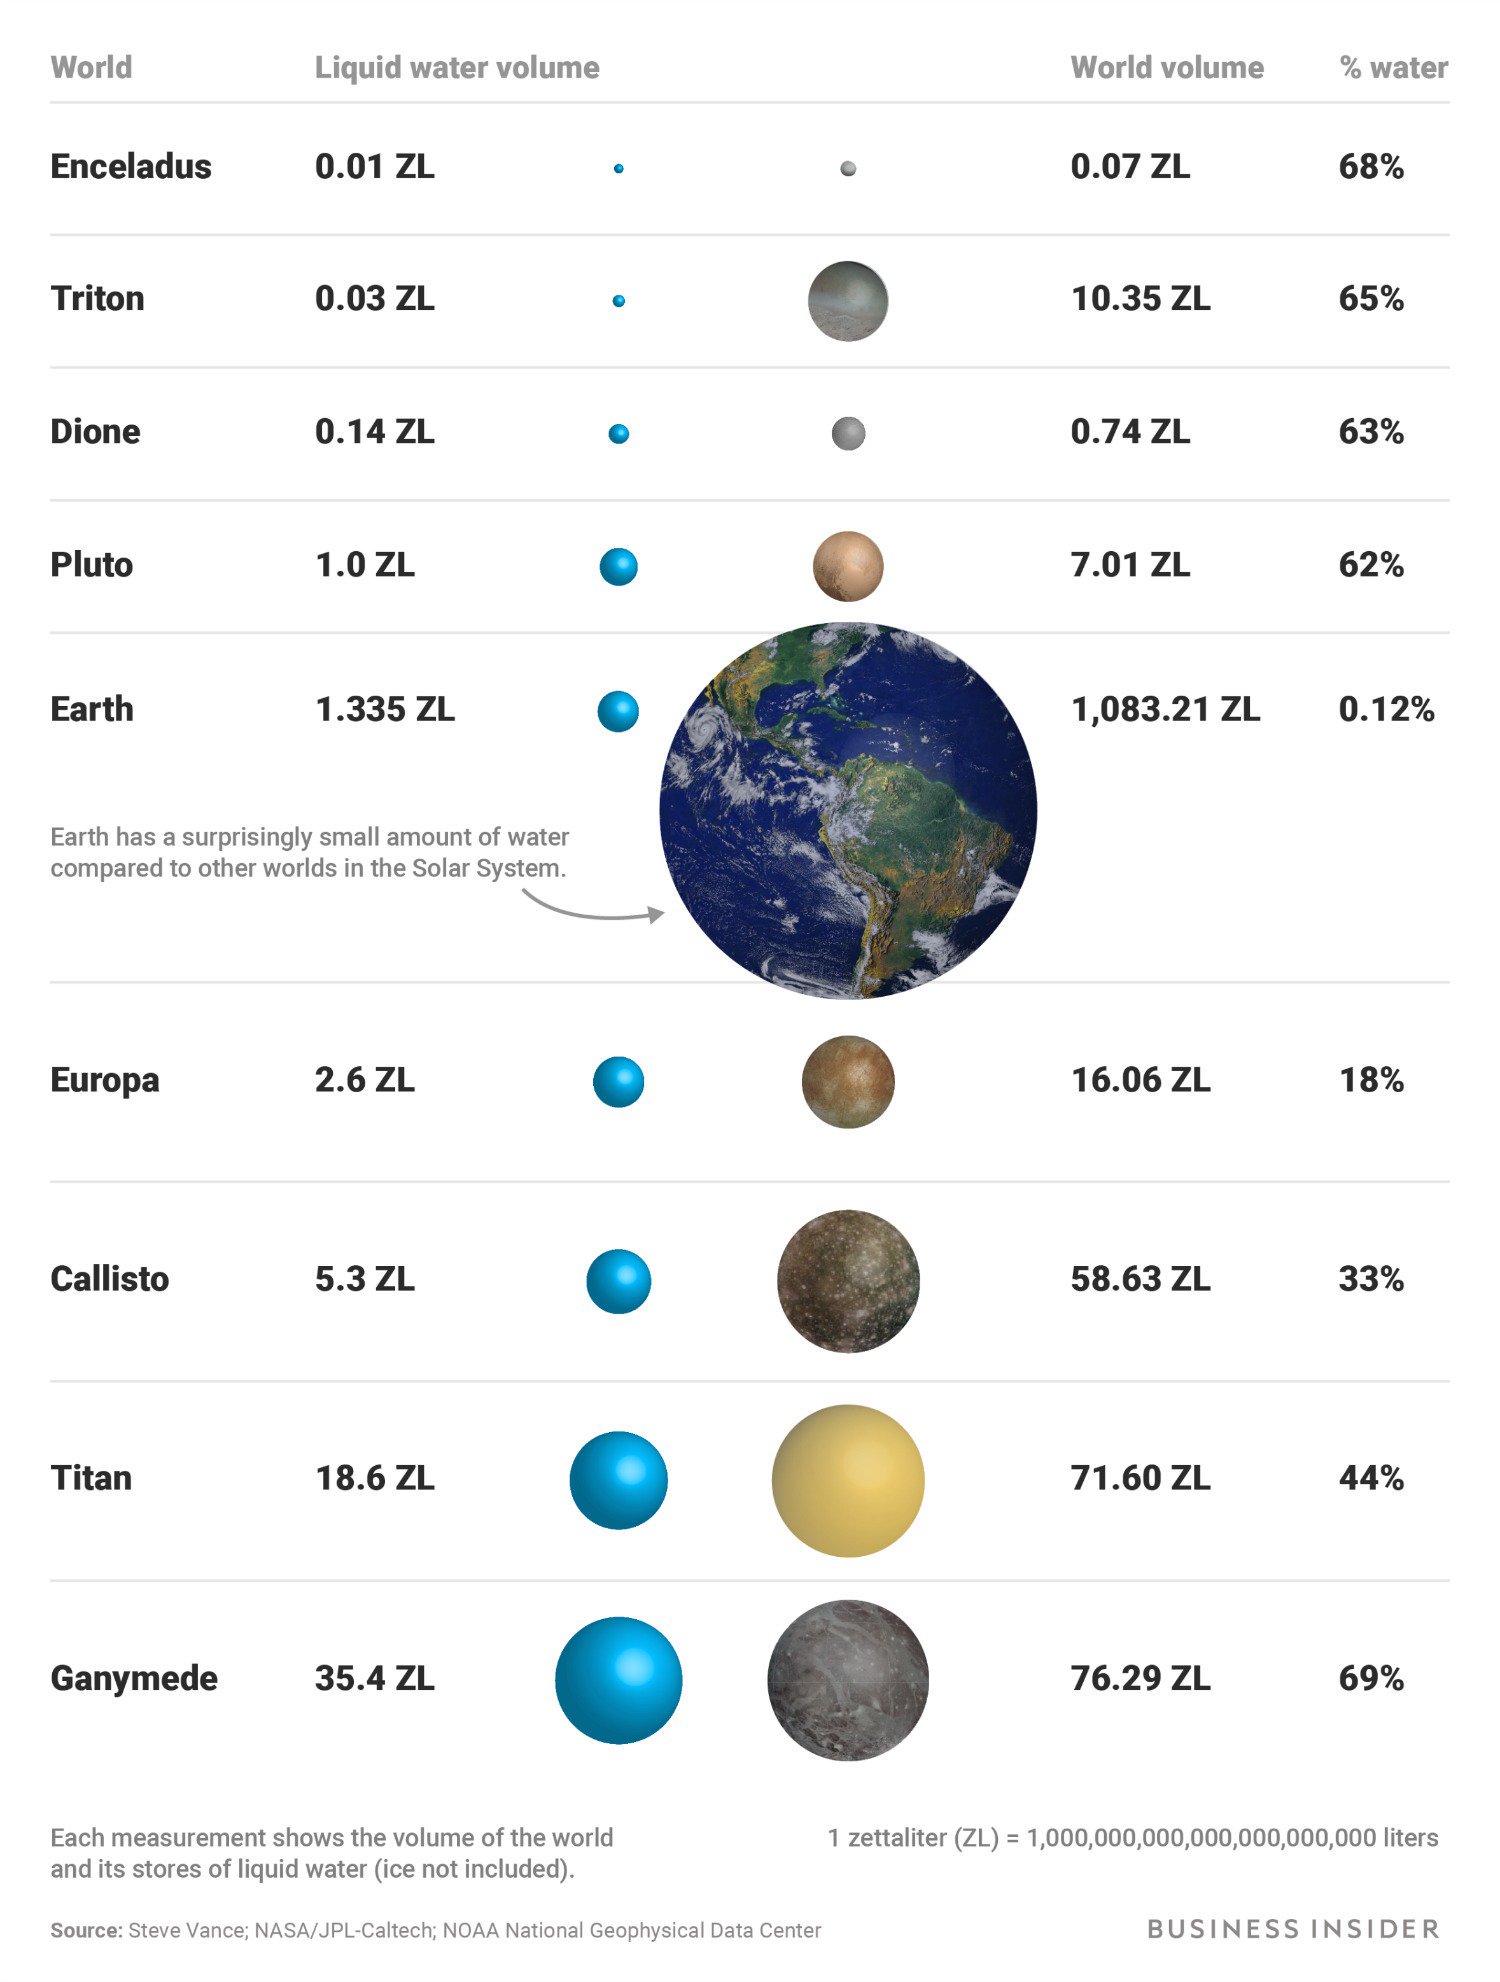 Земля обладает далеко не самым большим запасом воды в Солнечной системе